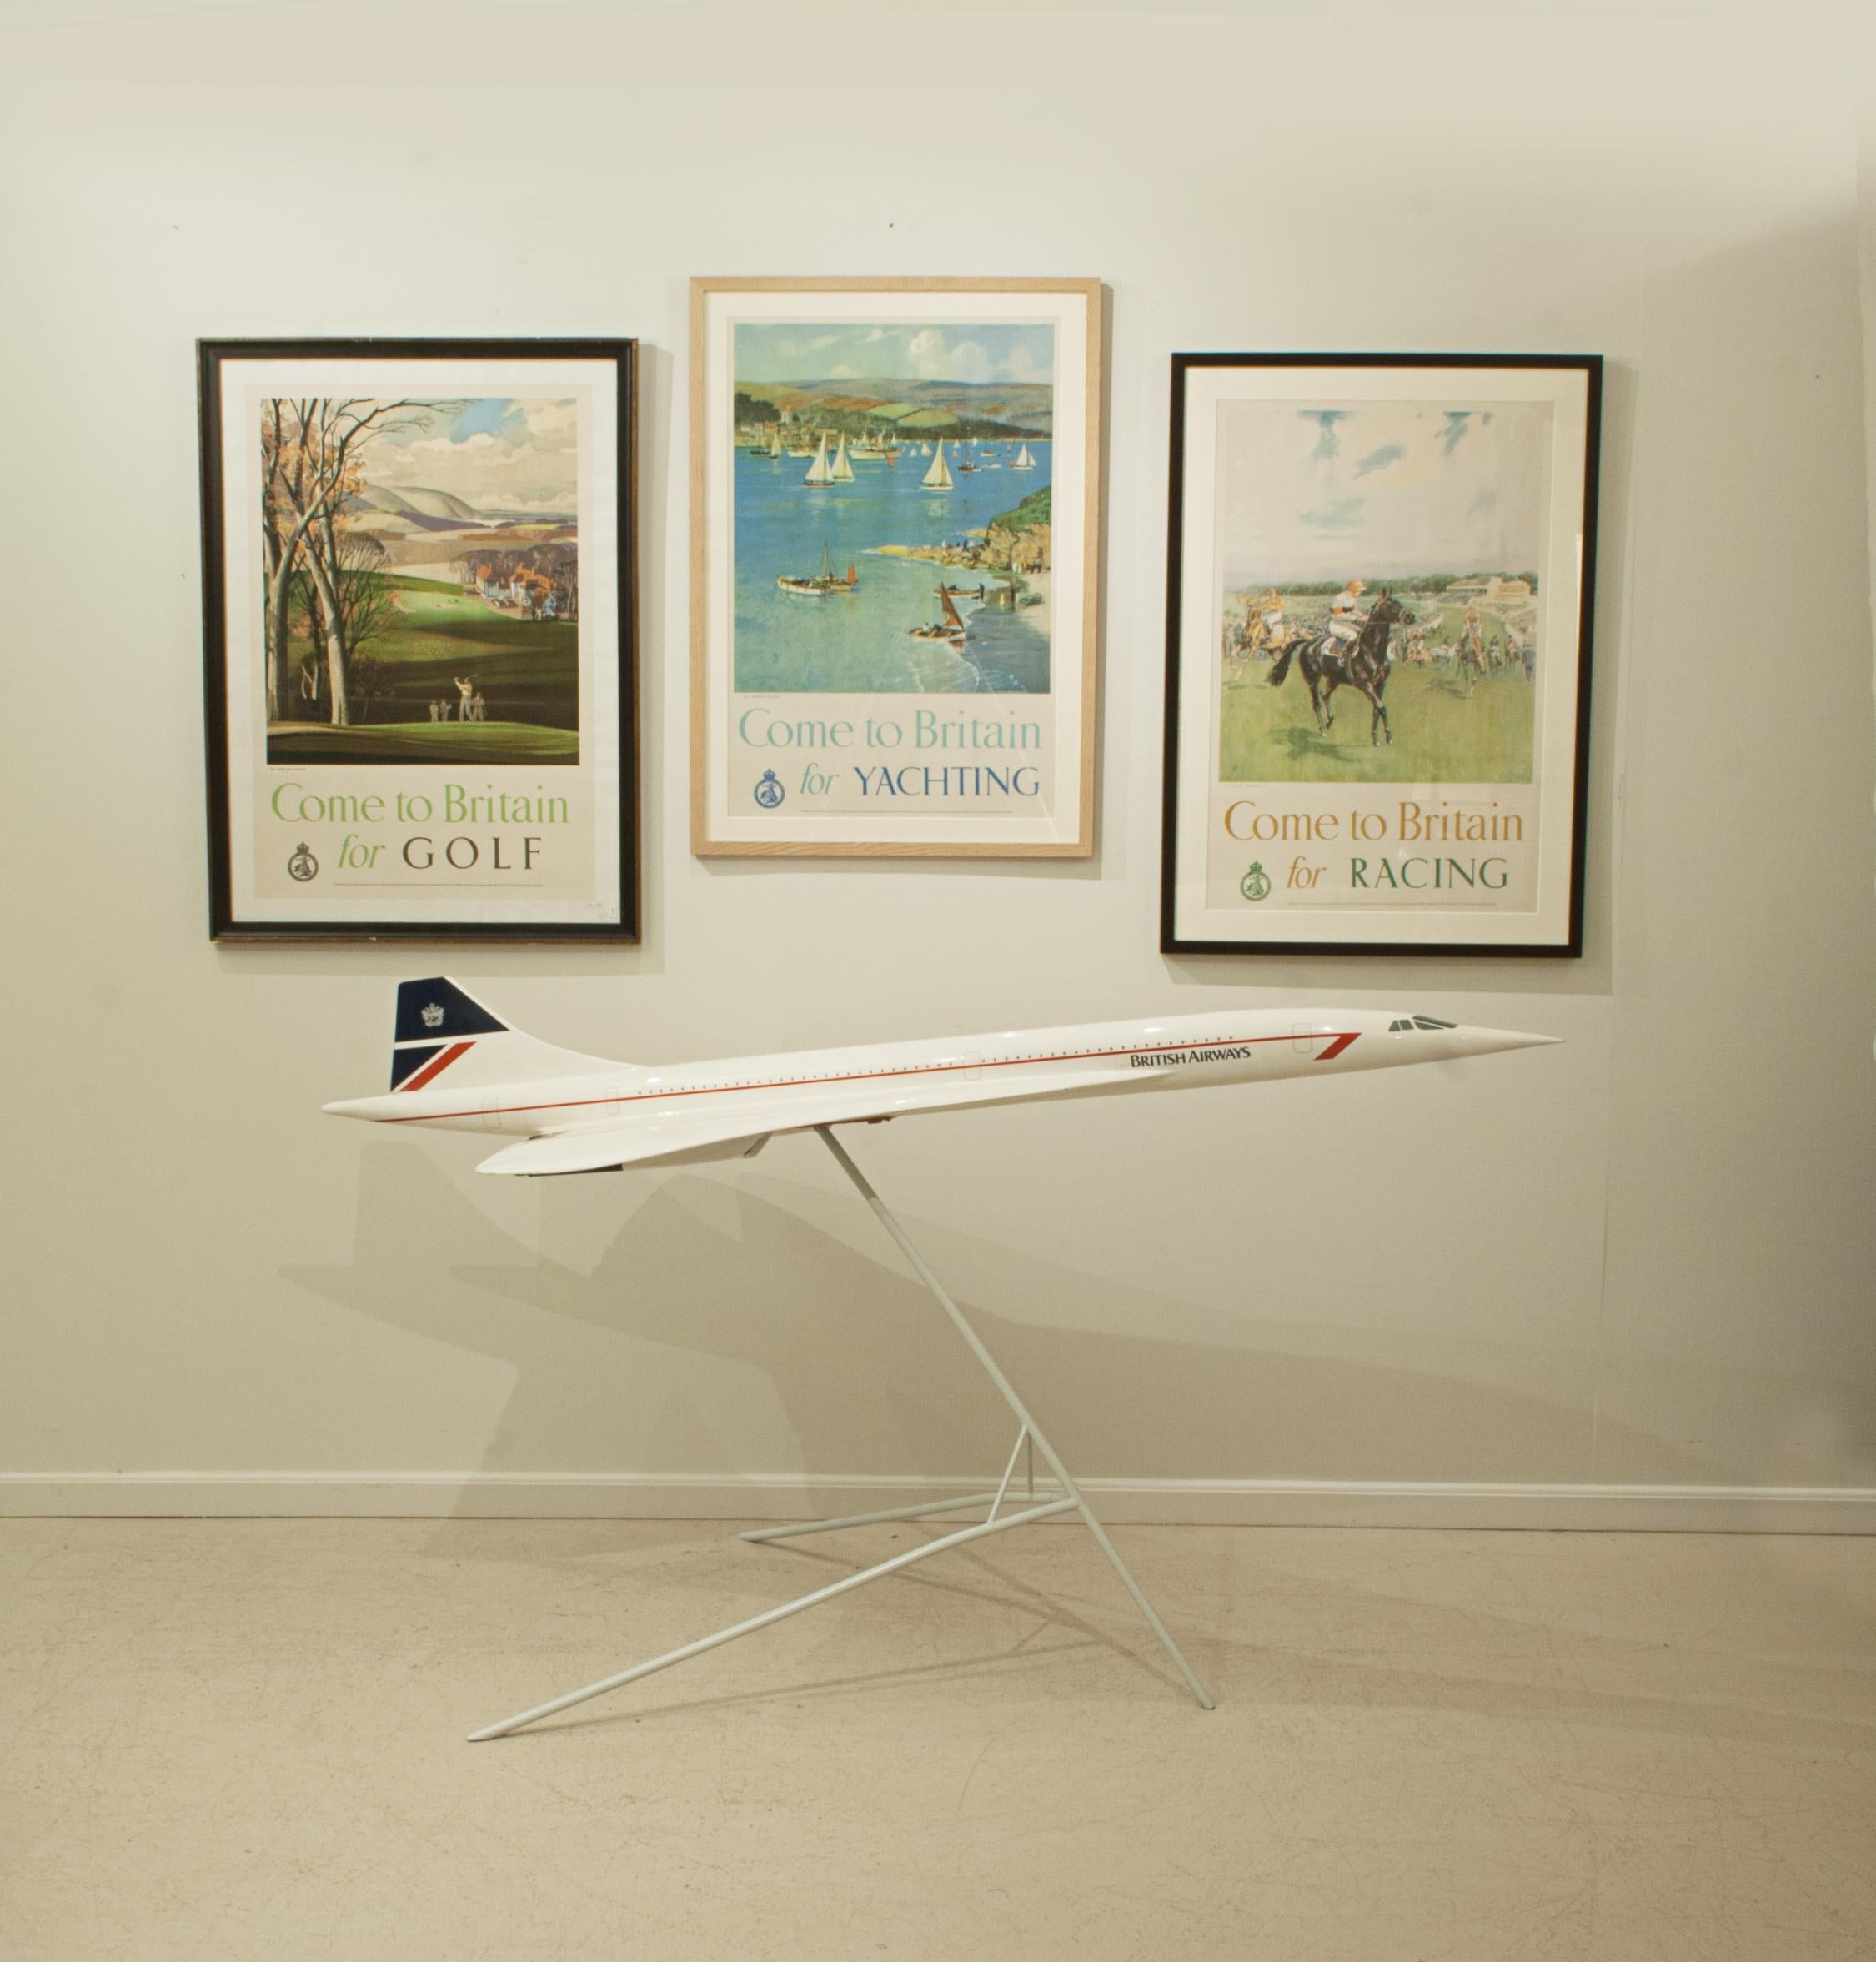 Rare maquette d'avion British Airways Concorde 1:36 6' Vintage
Très belle et rare maquette vintage en fibre de verre et résine composite à l'échelle 1:36 du Concorde dans la livrée 'Landor' de British Airways. Ce splendide modèle composite est monté